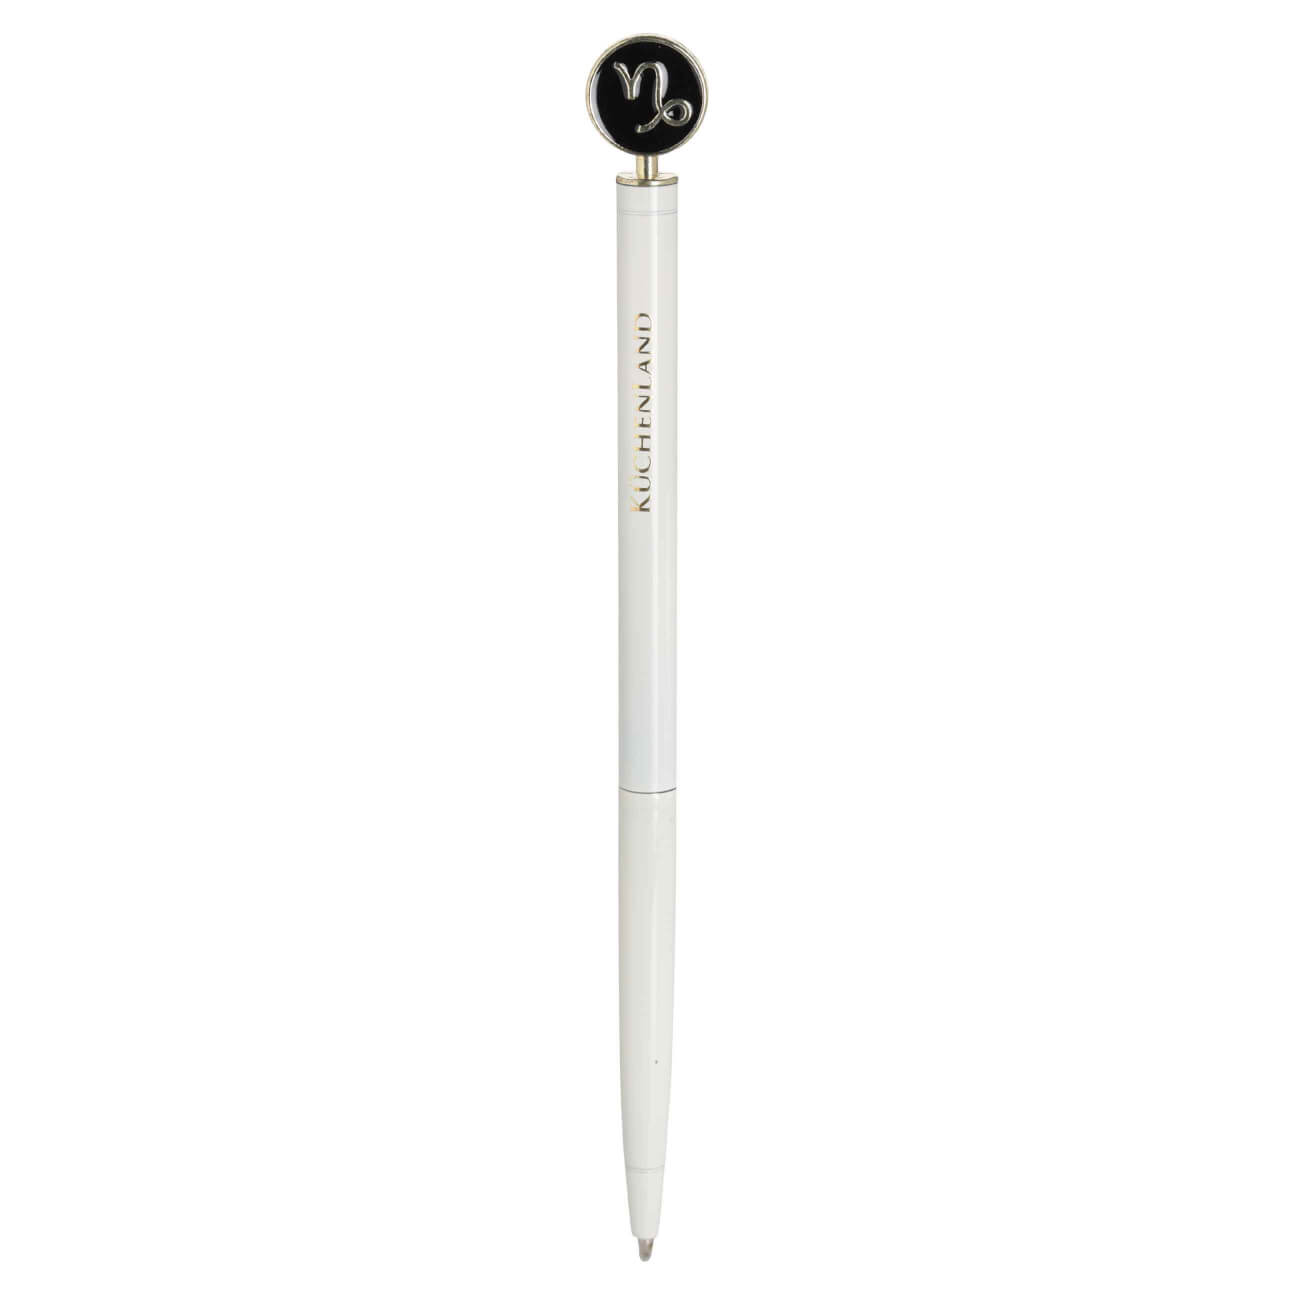 Ручка шариковая, 15 см, с фигуркой, сталь, молочно-золотистая, Козерог, Zodiac шариковая ручка kores